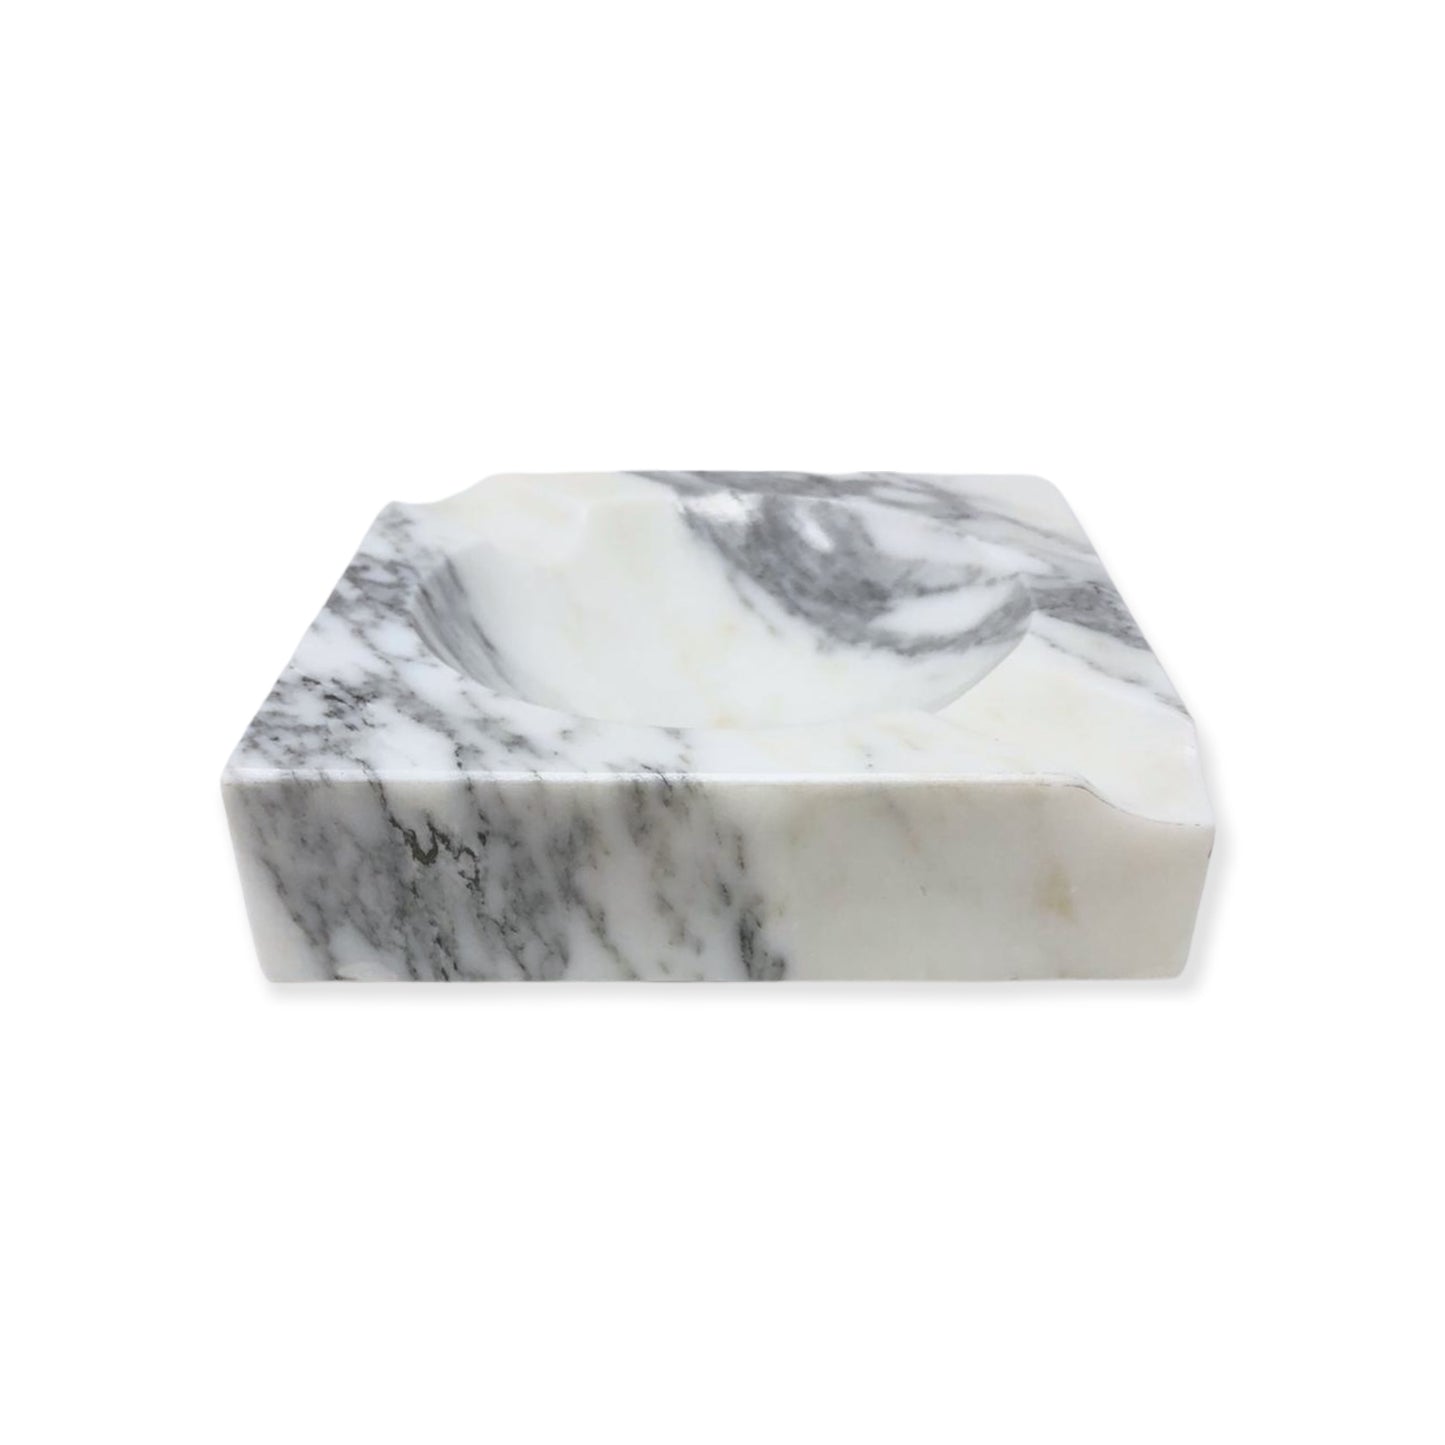 Ashtray - White Marble Small